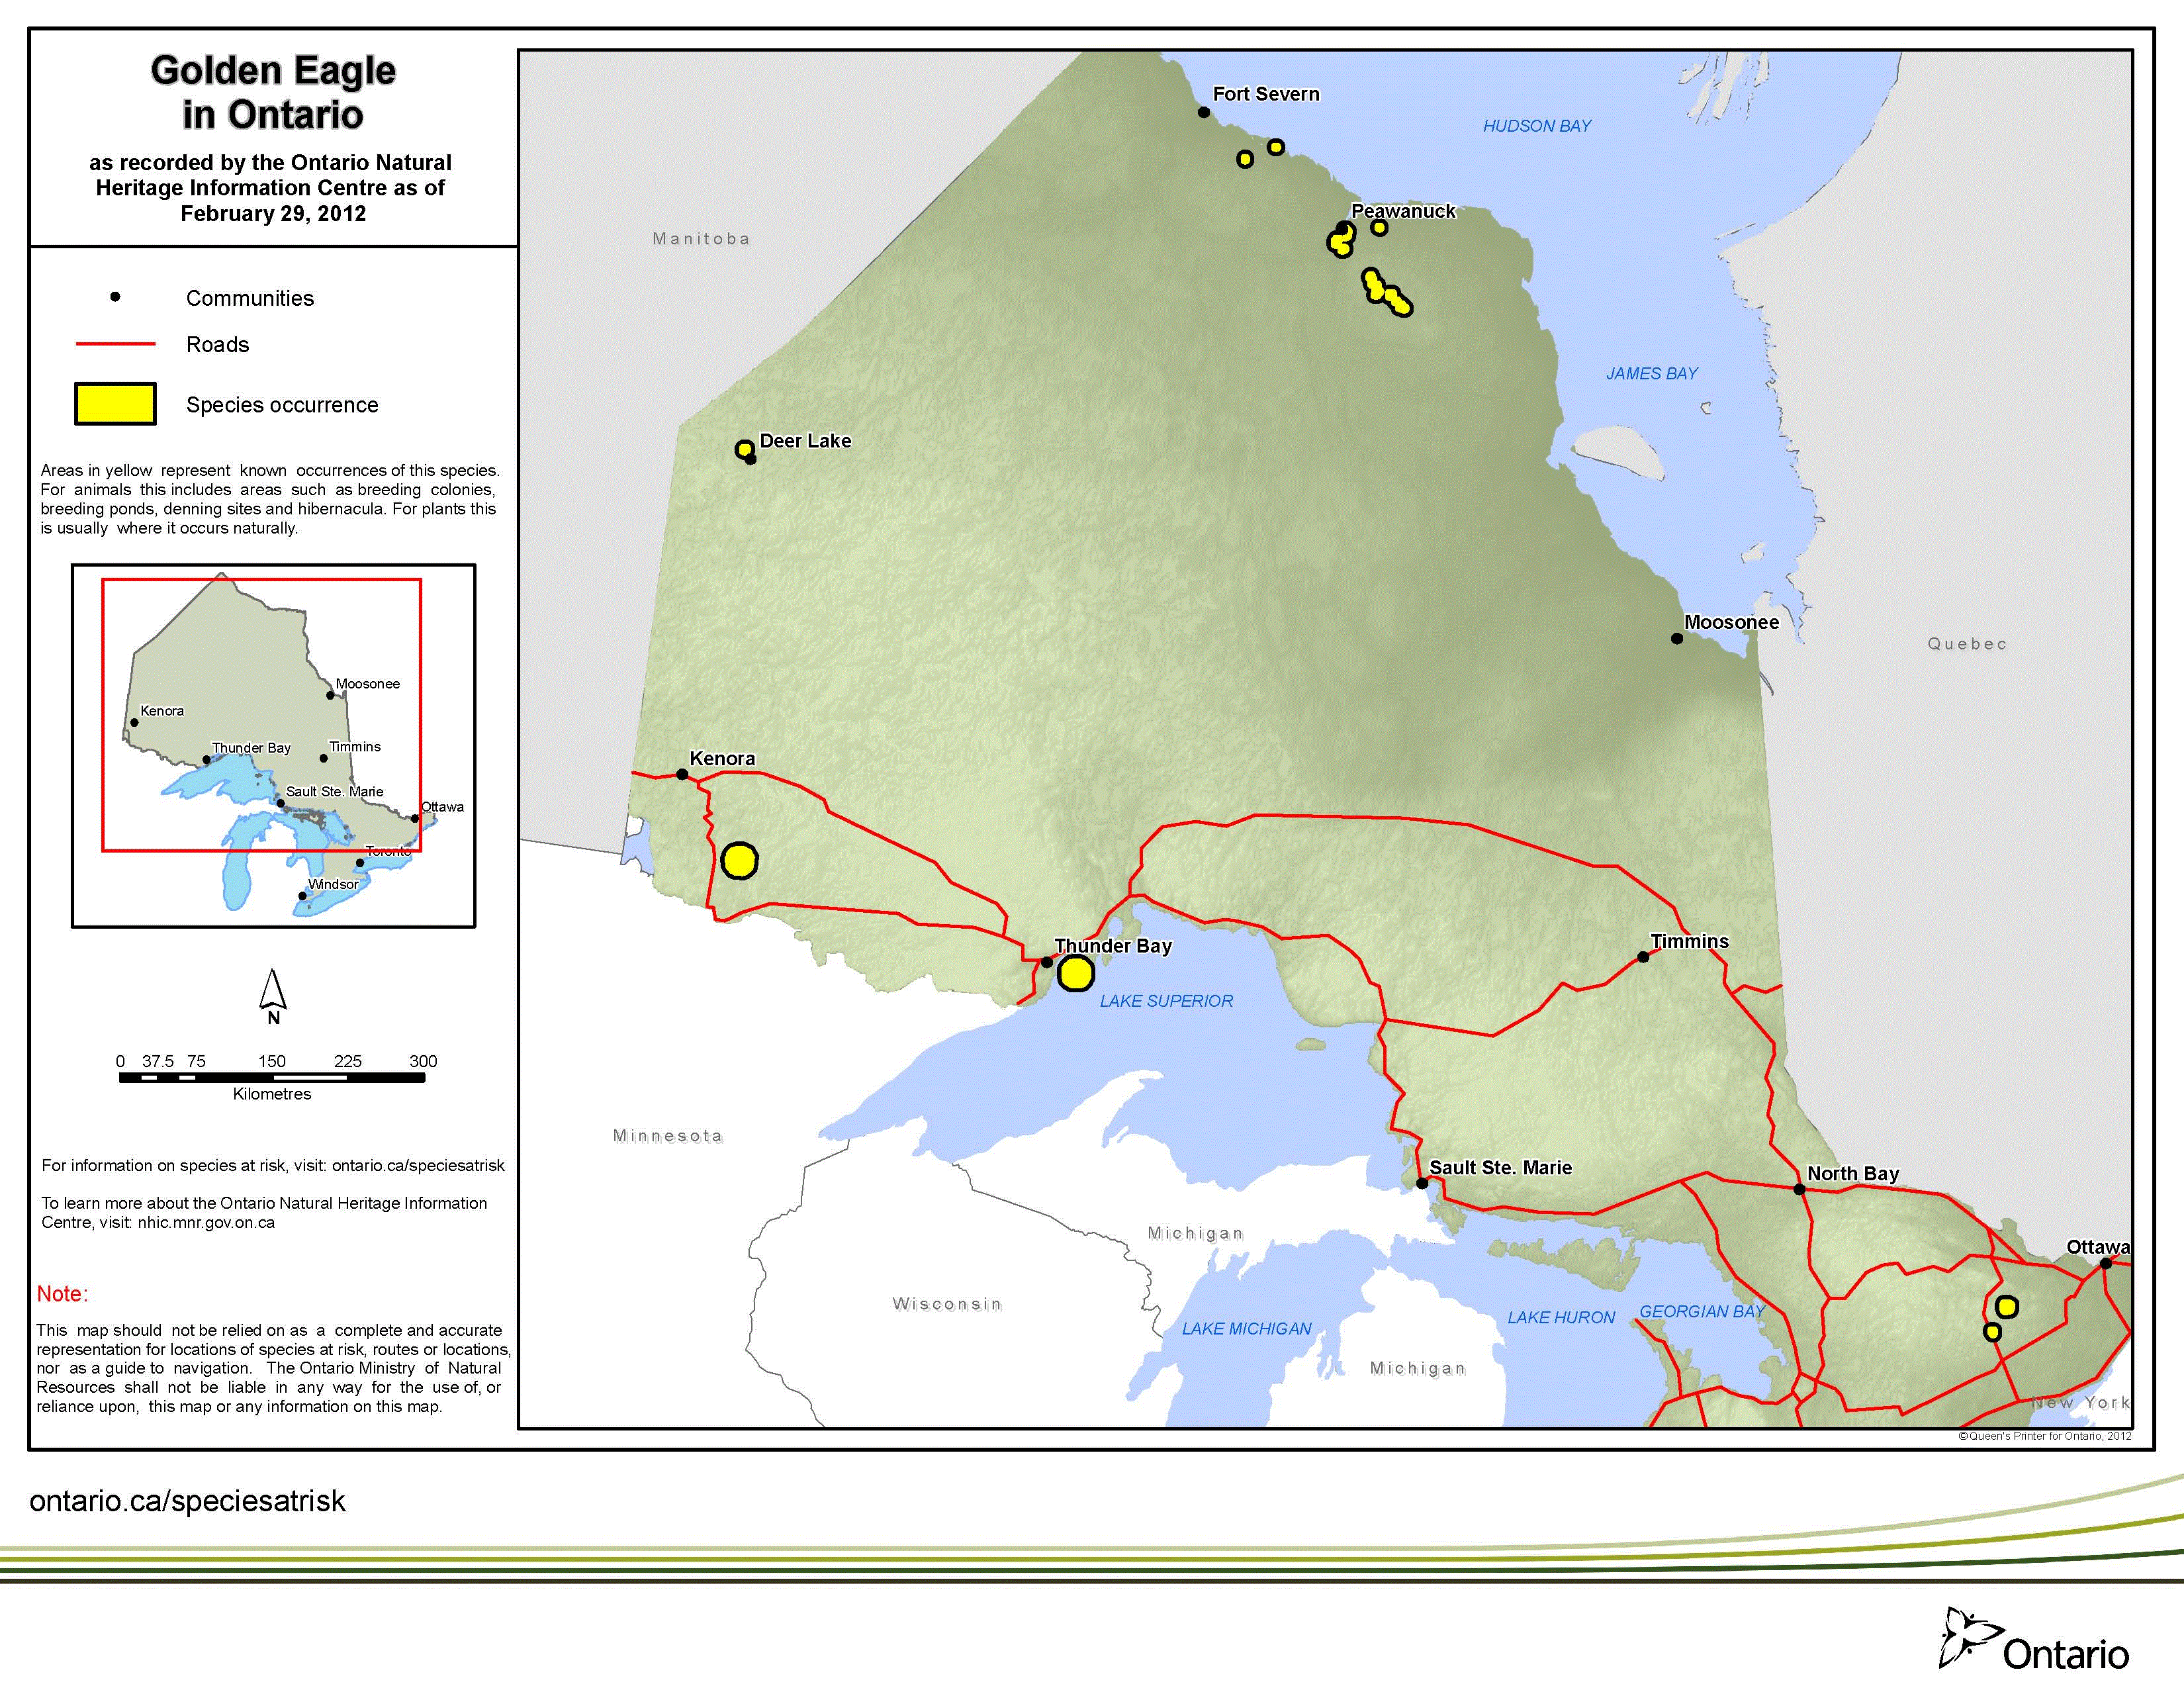 map of golden eagle range